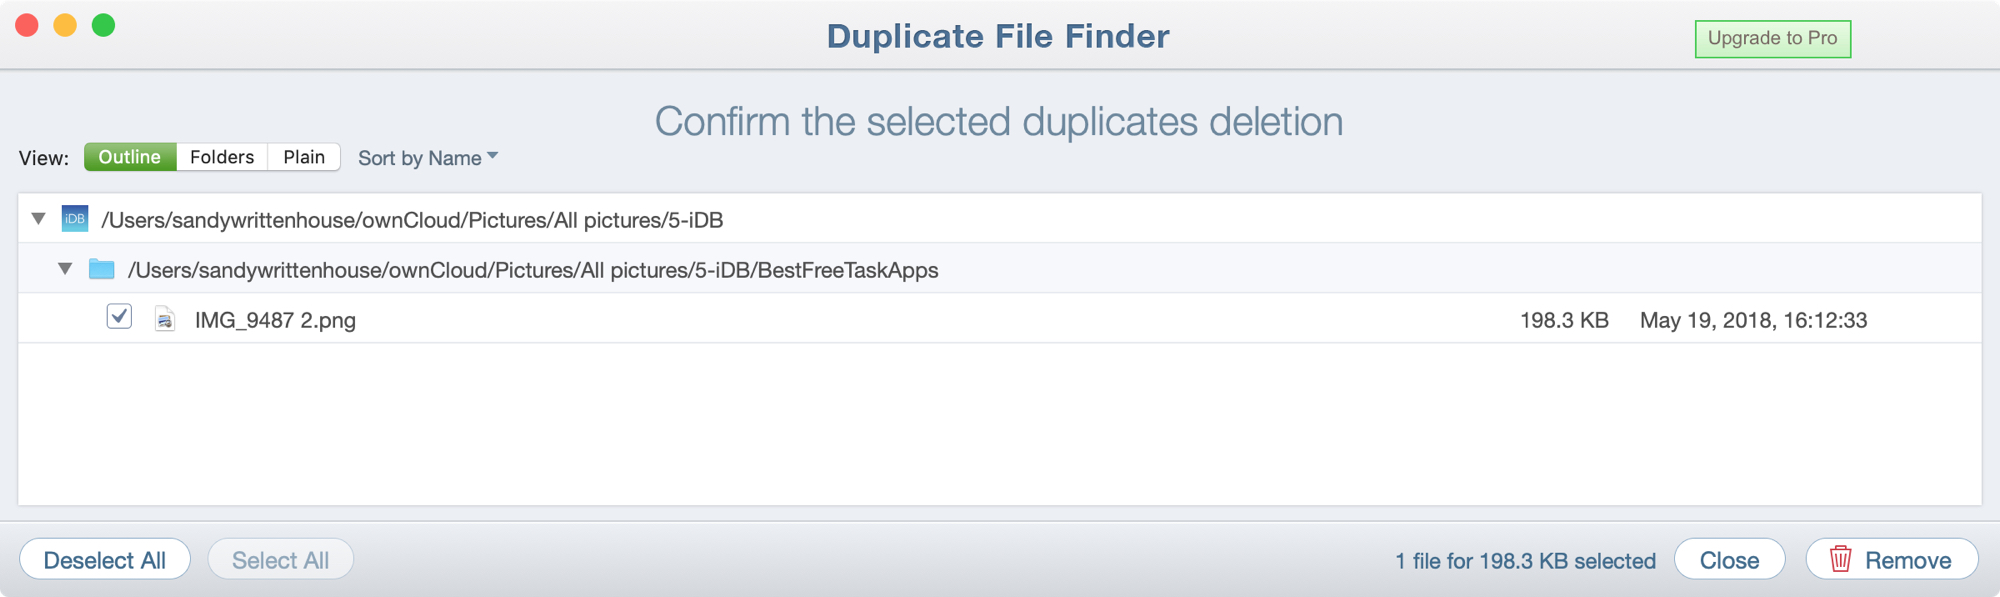 Duplicate File Finder Confirm Delete Mac